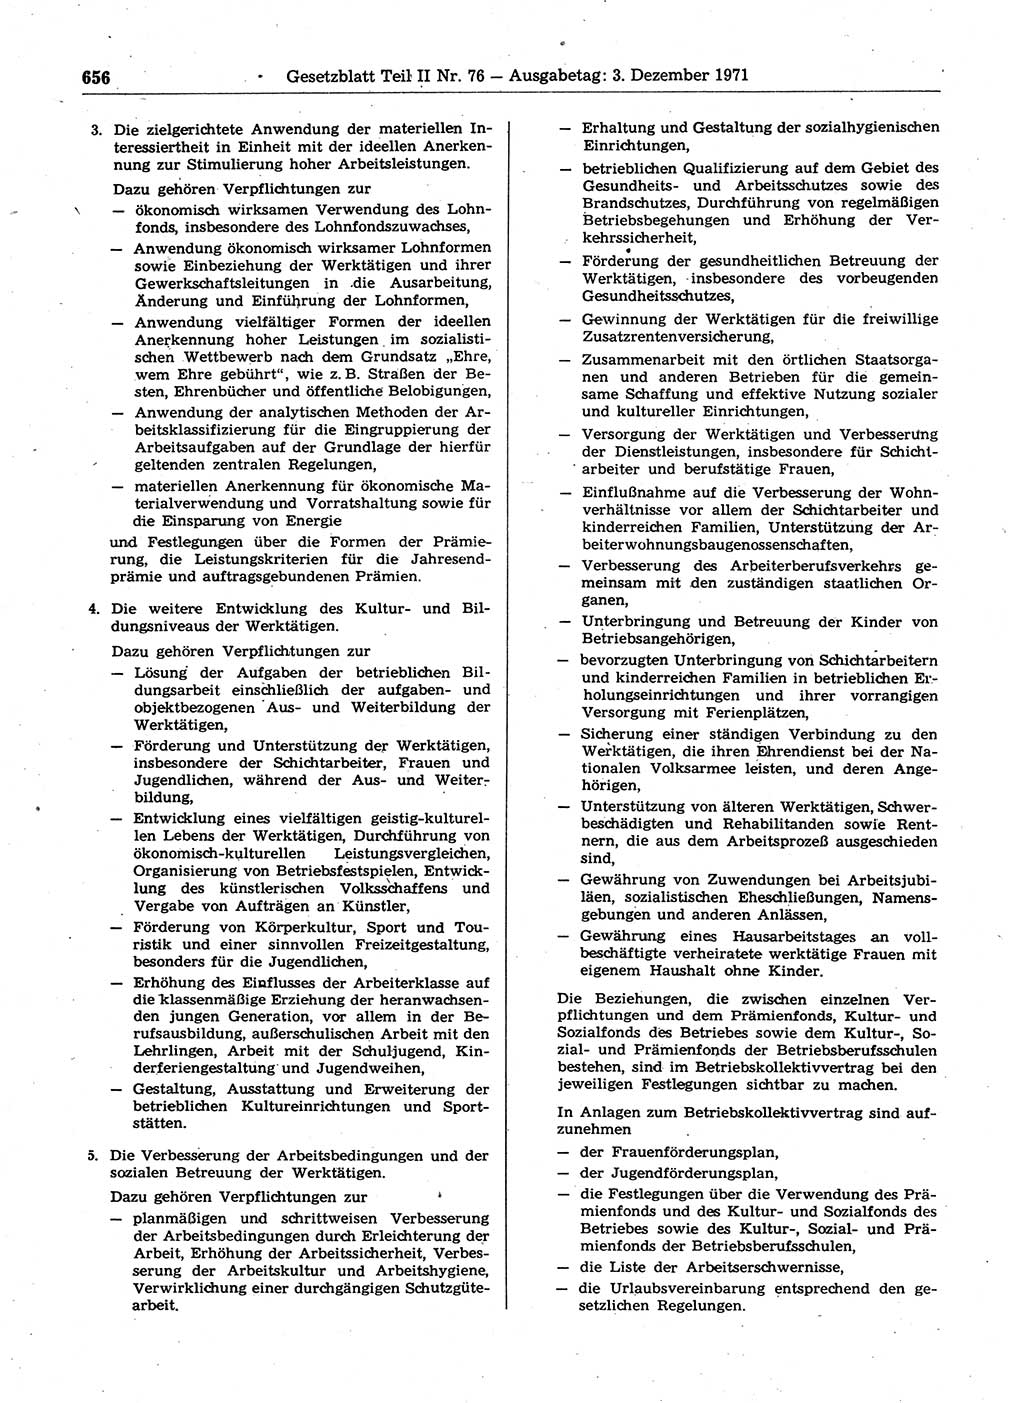 Gesetzblatt (GBl.) der Deutschen Demokratischen Republik (DDR) Teil ⅠⅠ 1971, Seite 656 (GBl. DDR ⅠⅠ 1971, S. 656)